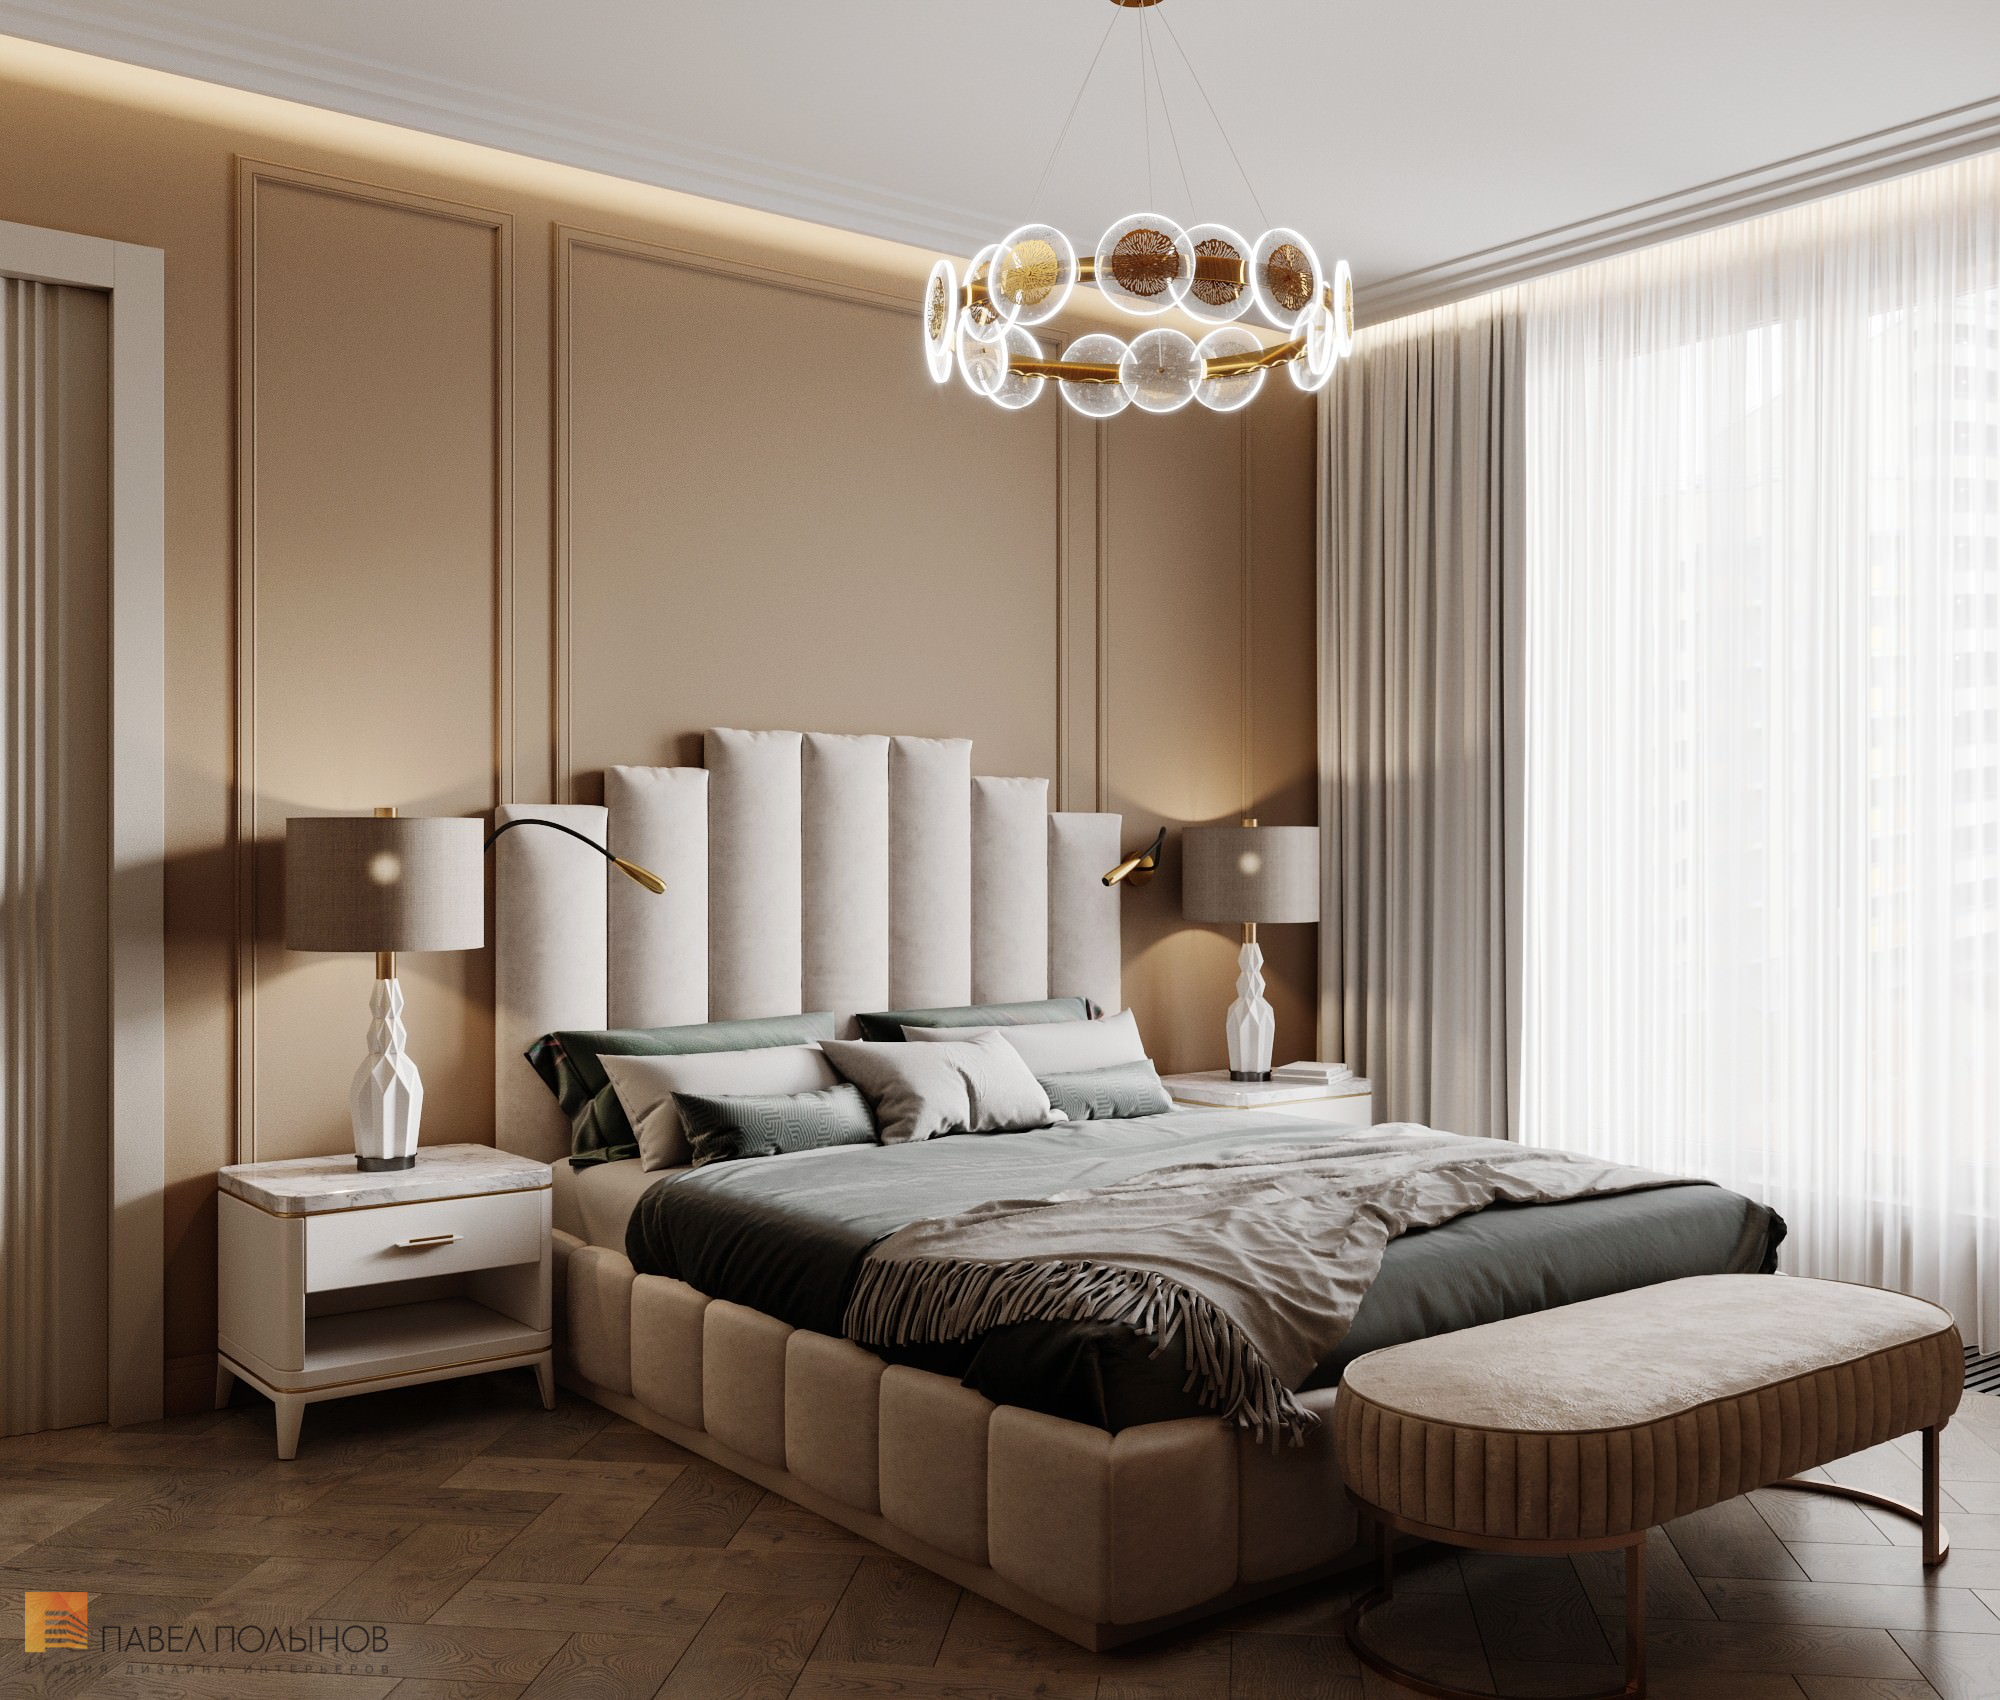 Фото интерьер спальни из проекта «Интерьер квартиры в современном стиле, 178 кв.м.»